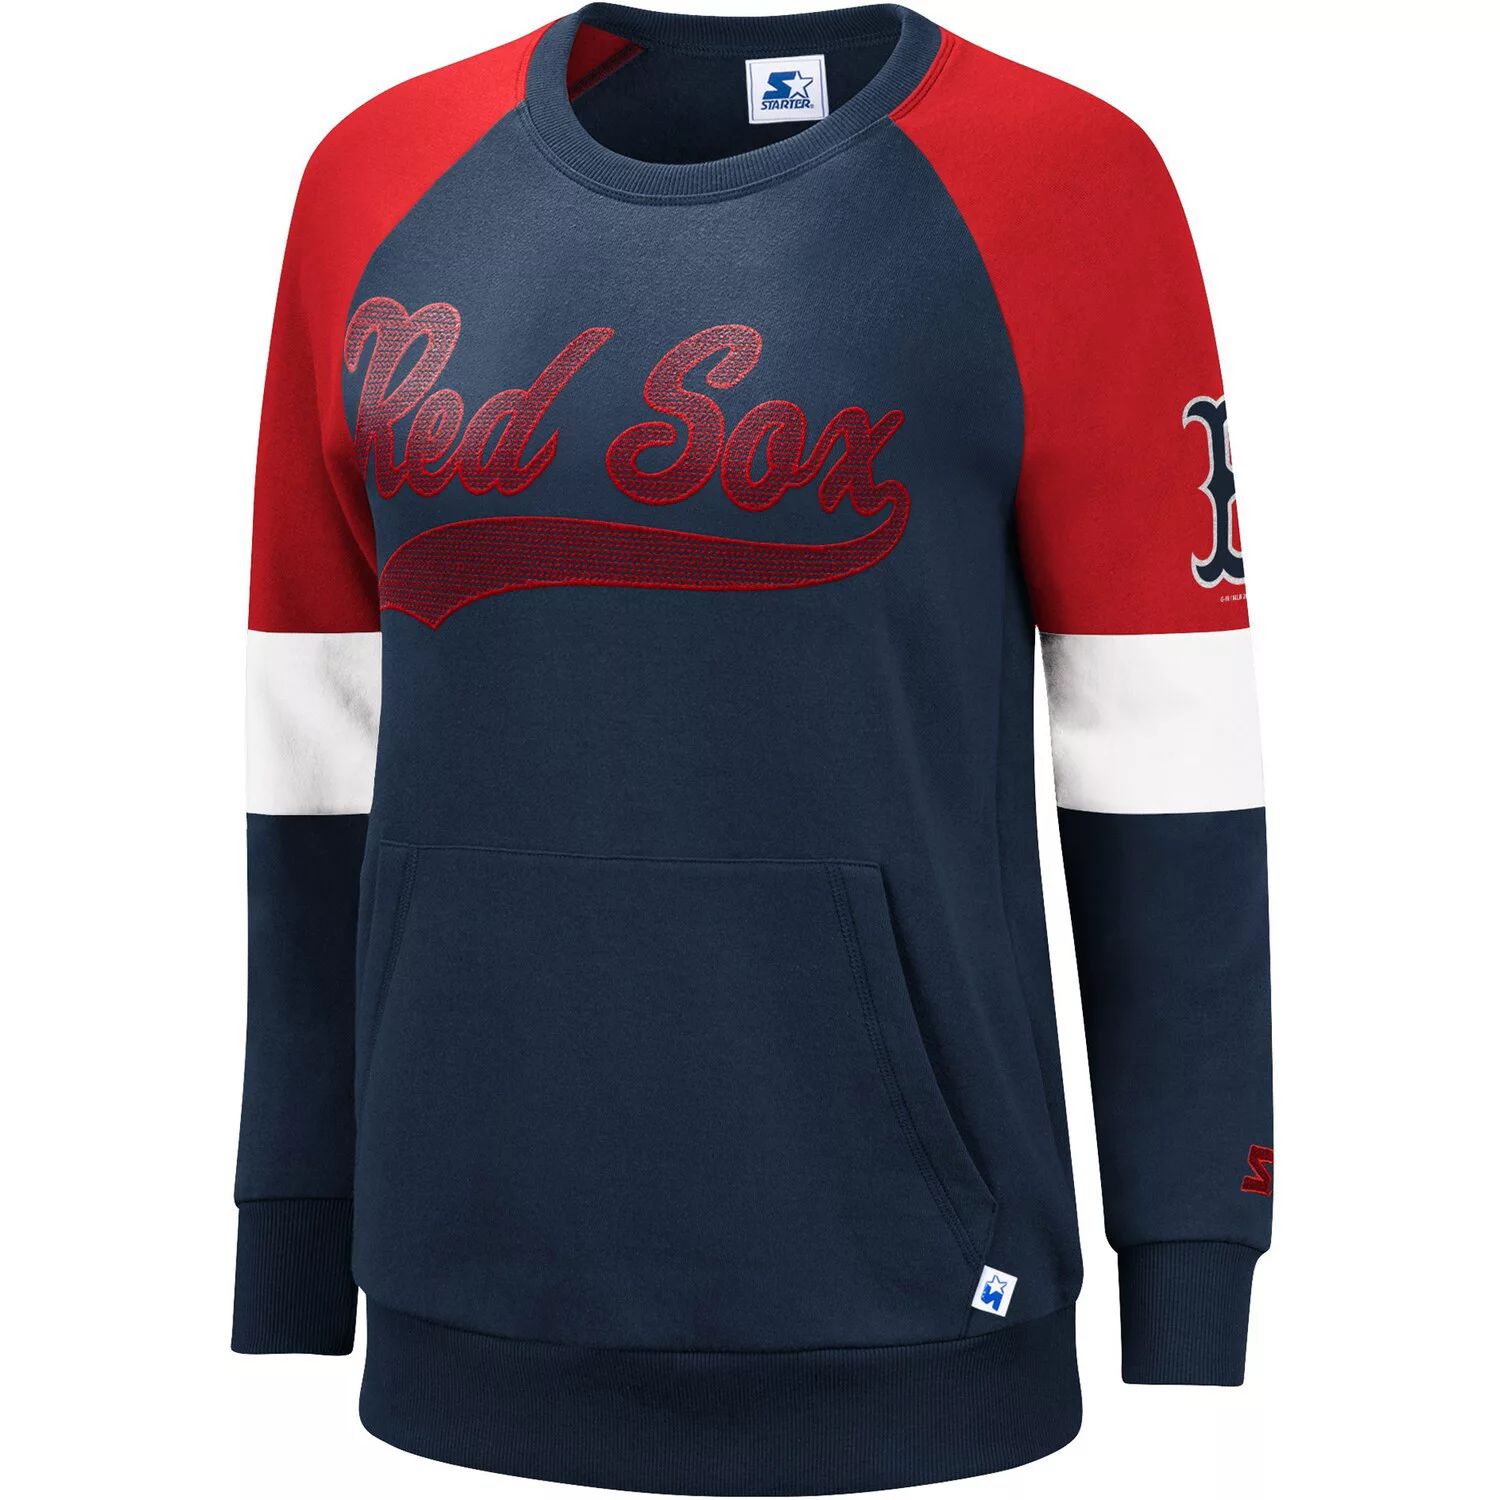 Женский стартовый свитер темно-синего/красного цвета Boston Red Sox Playmaker с пуловером реглан Starter